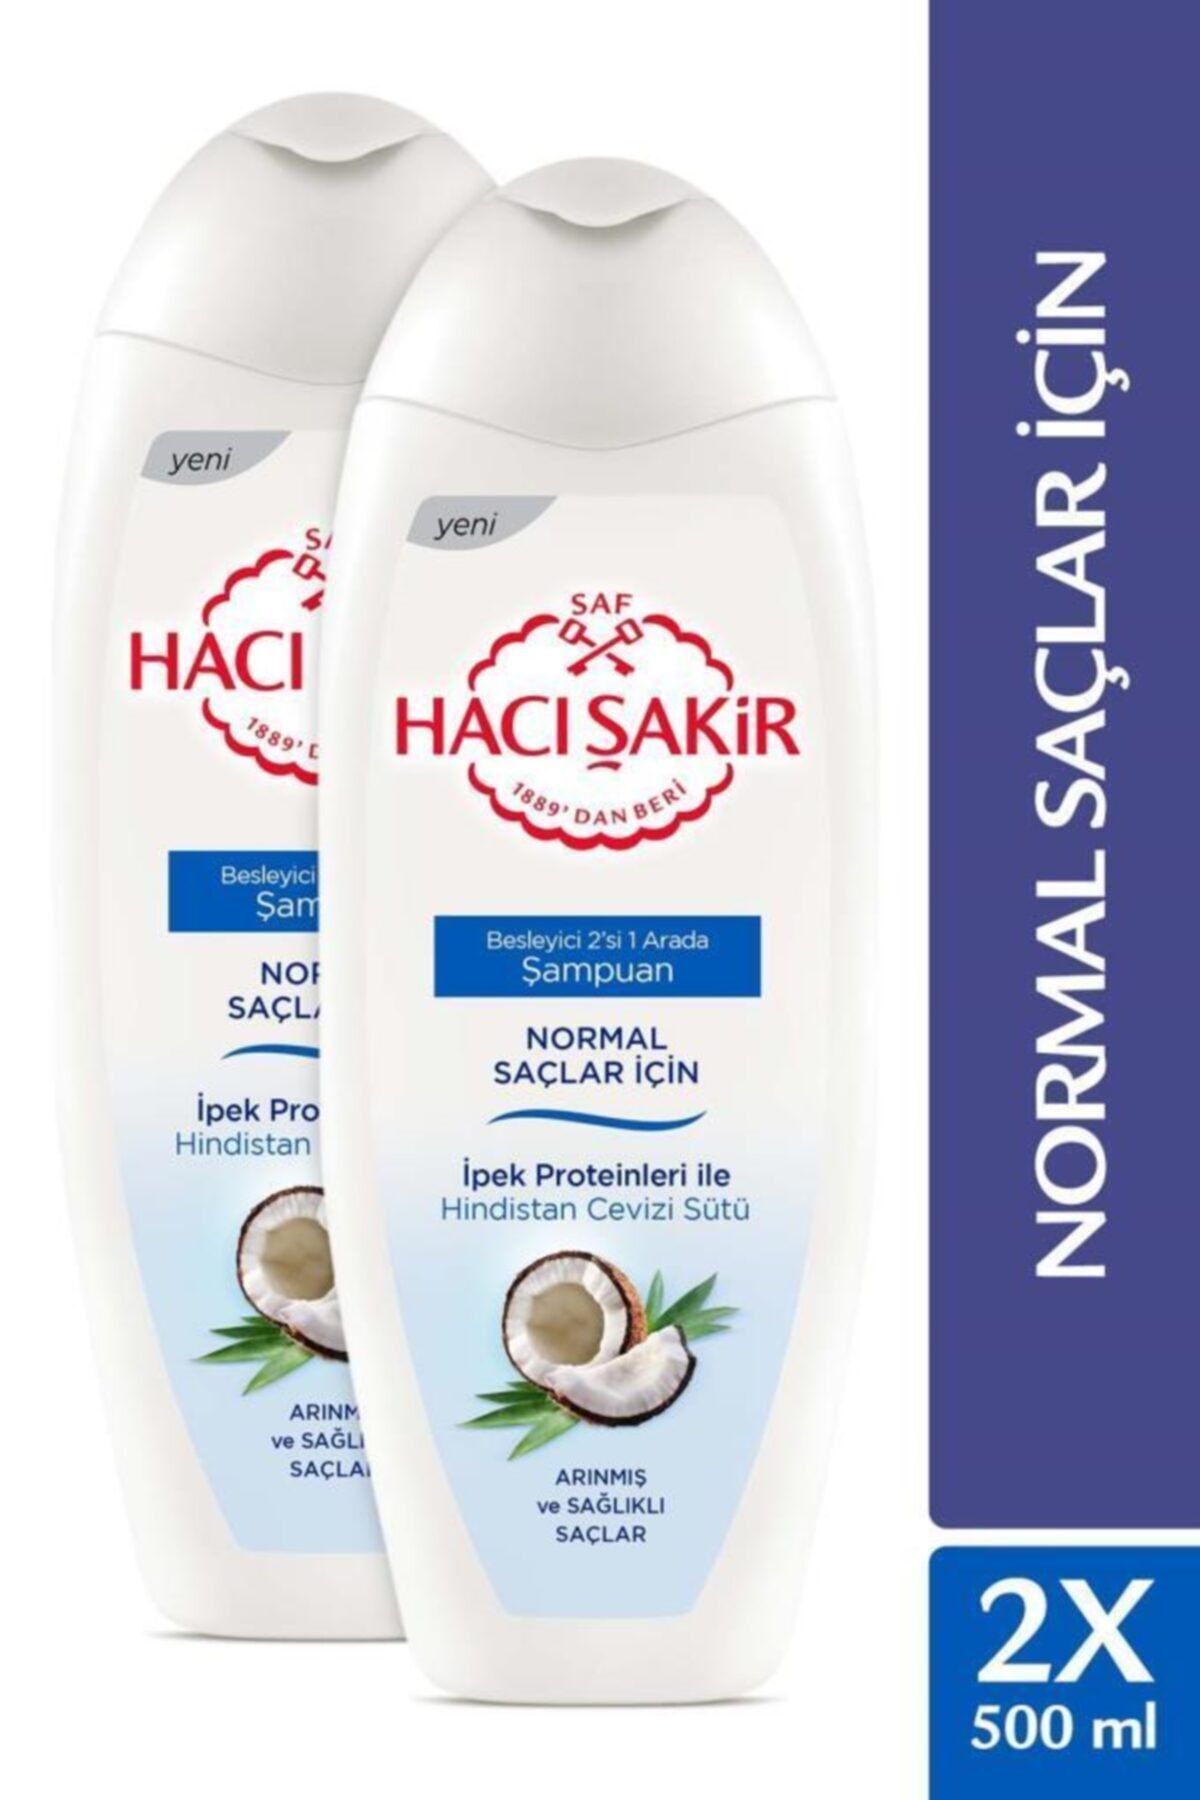 Hacı Şakir Normal Saçlar için Hindistan Cevizi Sütlü Besleyici 2'si 1 Arada Şampuan 500 ml x2 Adet